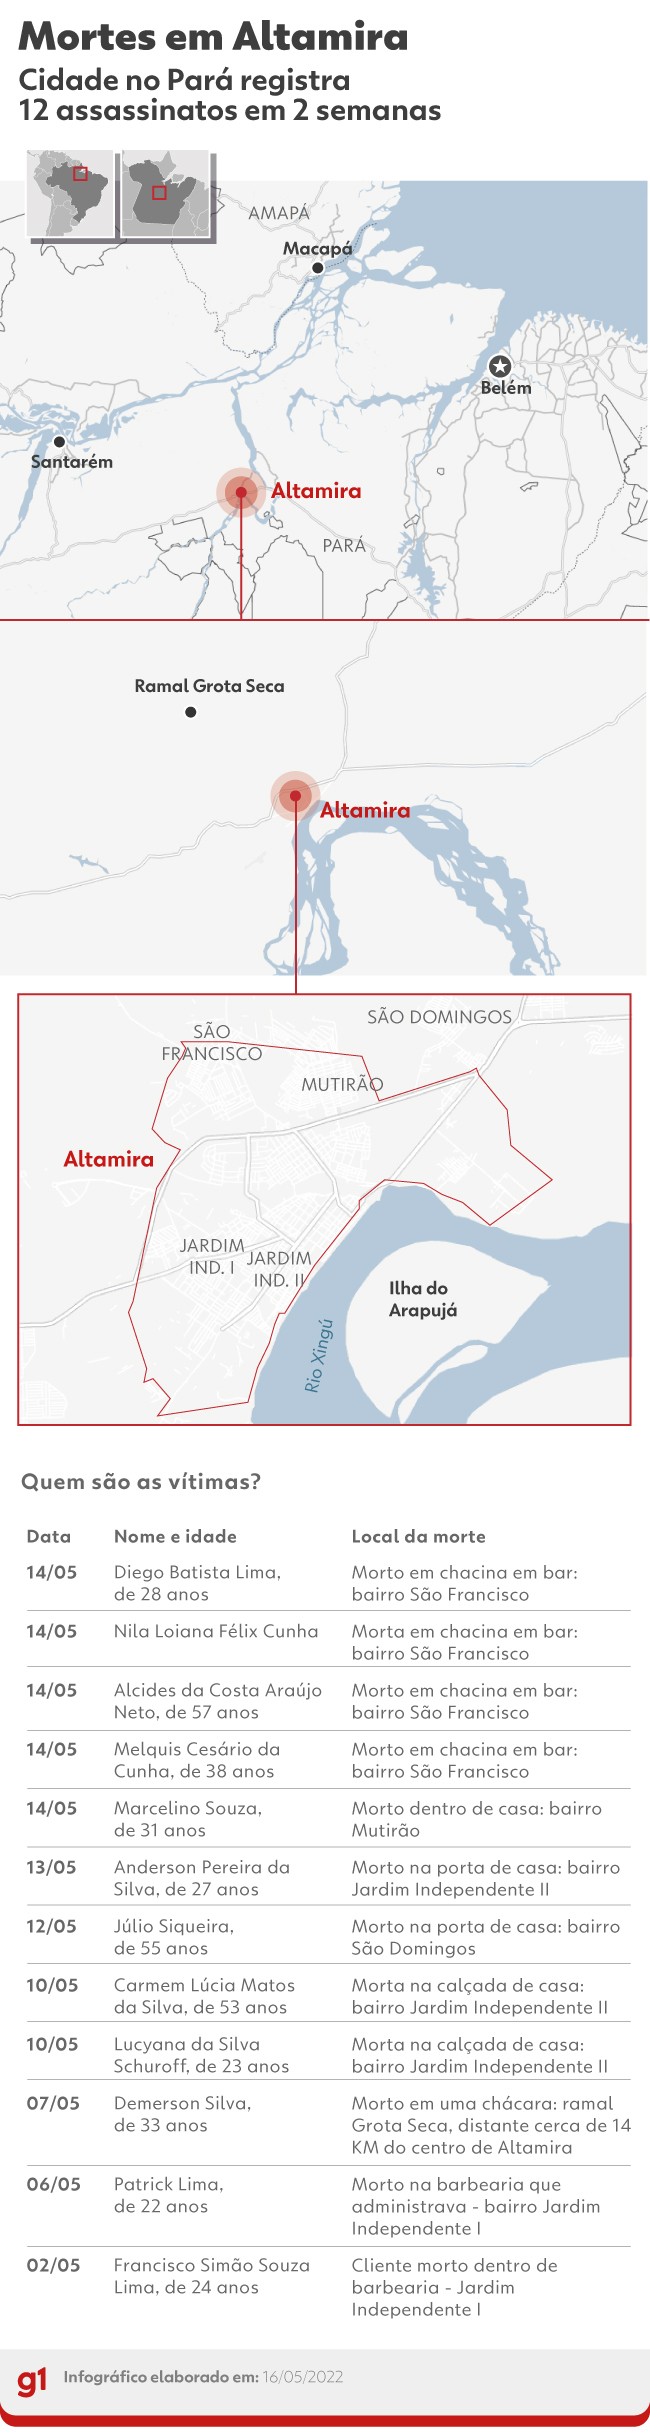 Onda de violência em Altamira: execuções estão ligadas a conflitos entre facções criminosas, diz governador do Pará